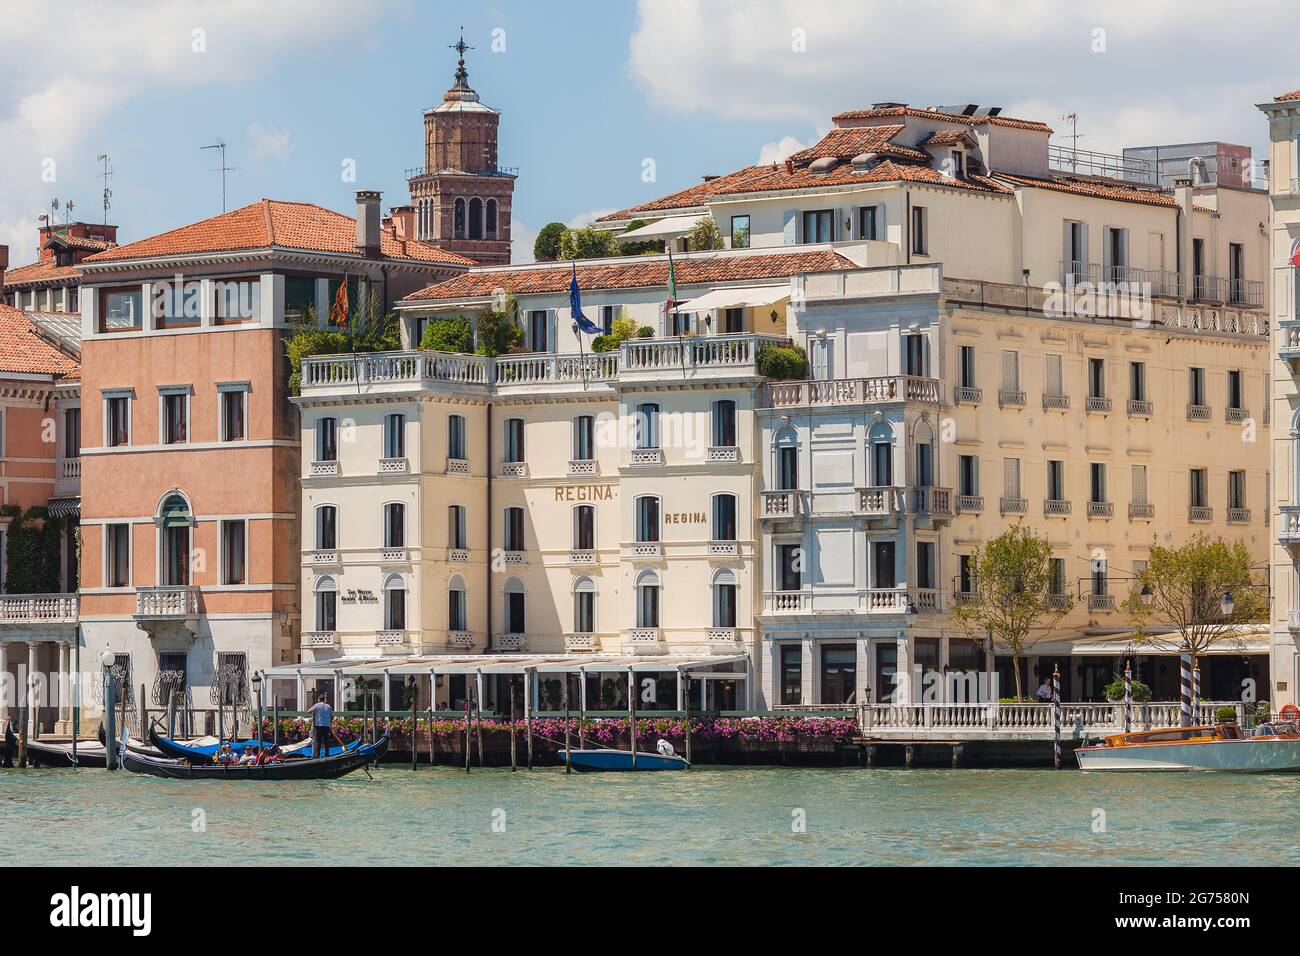 Venice, Italy - June 15, 2016 Hotel Regina on the Grand Canal, Venice, Italy Stock Photo